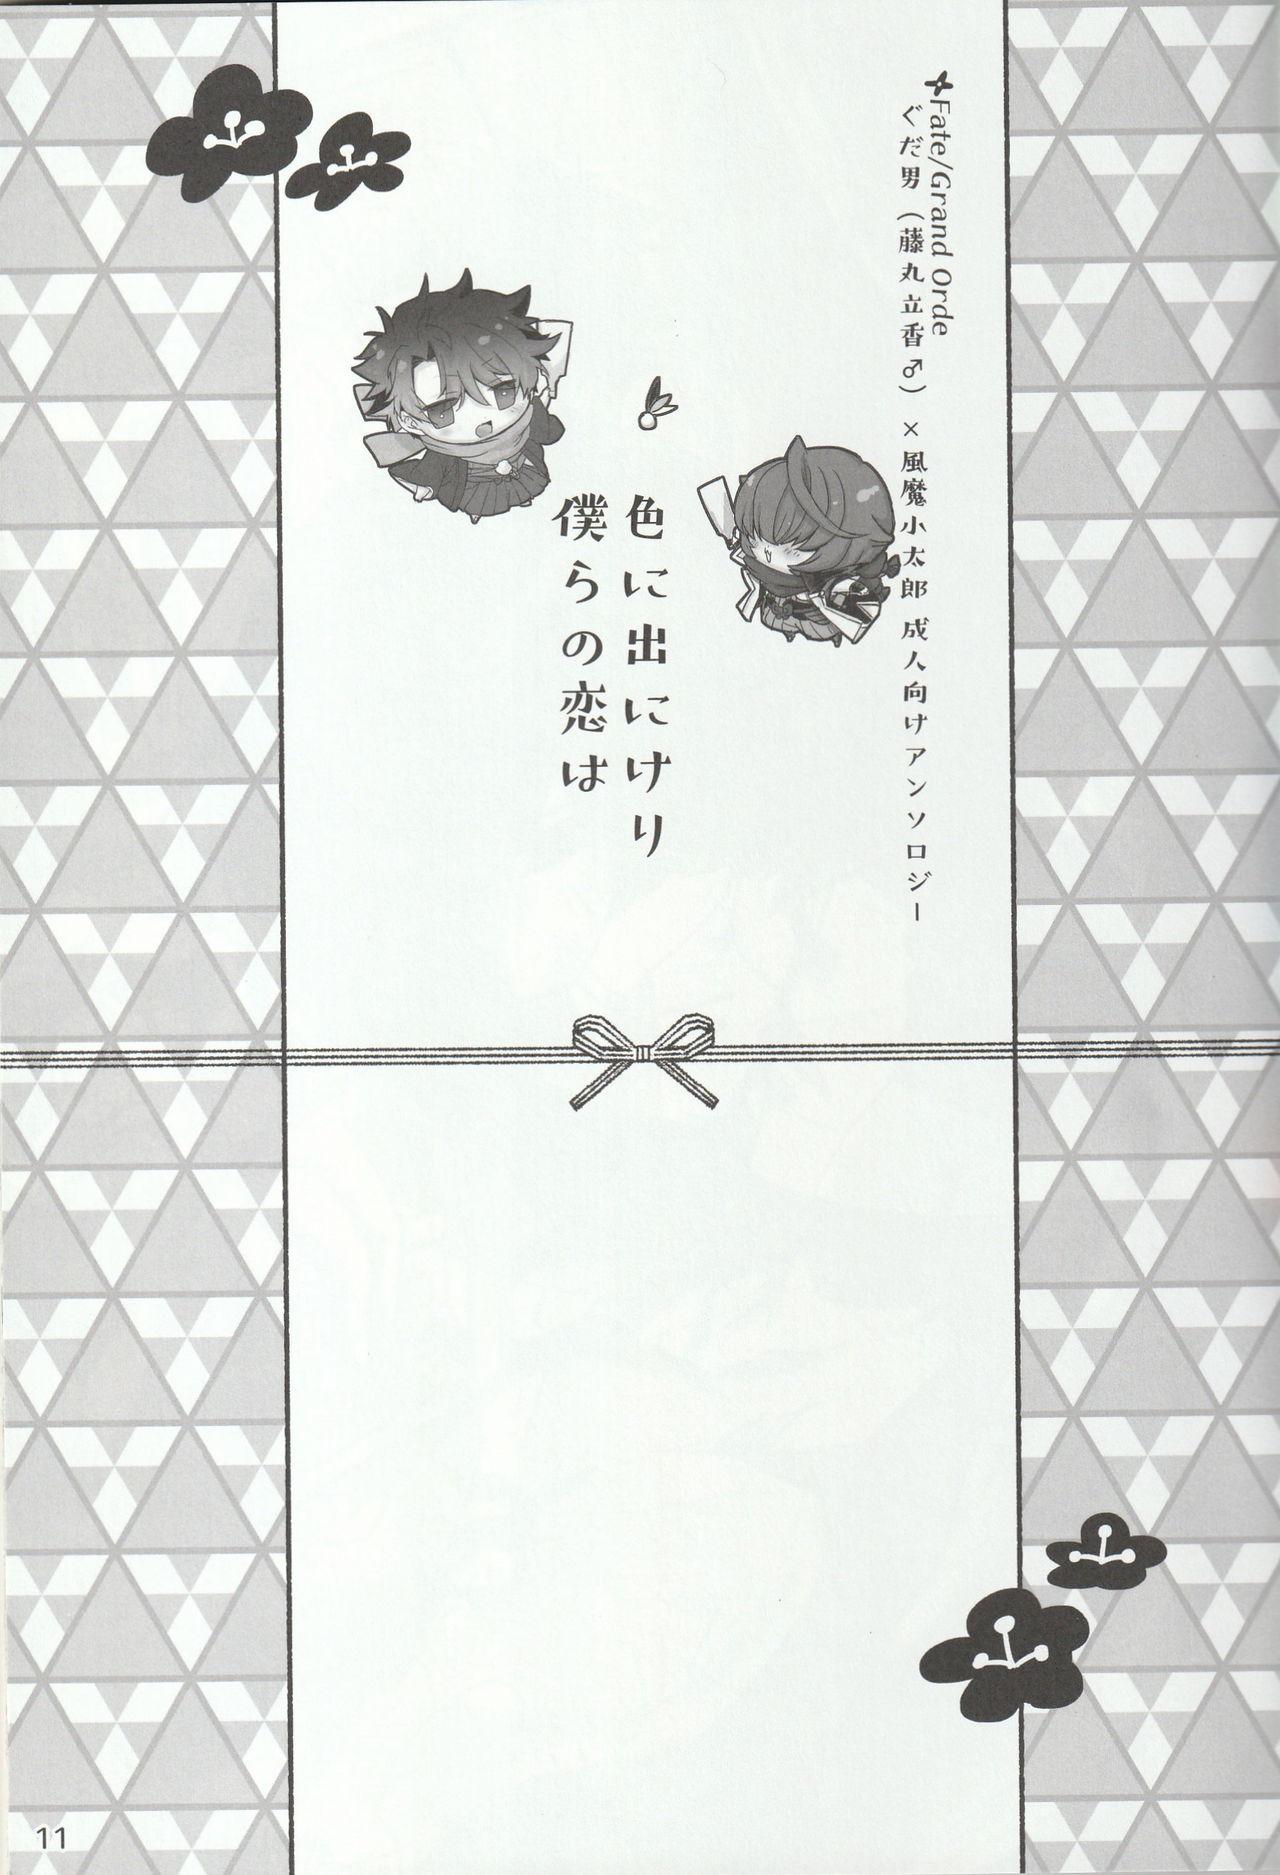 Nylons Iro ni Deni keri Bokura no Koi wa - Fate grand order Chicks - Page 11